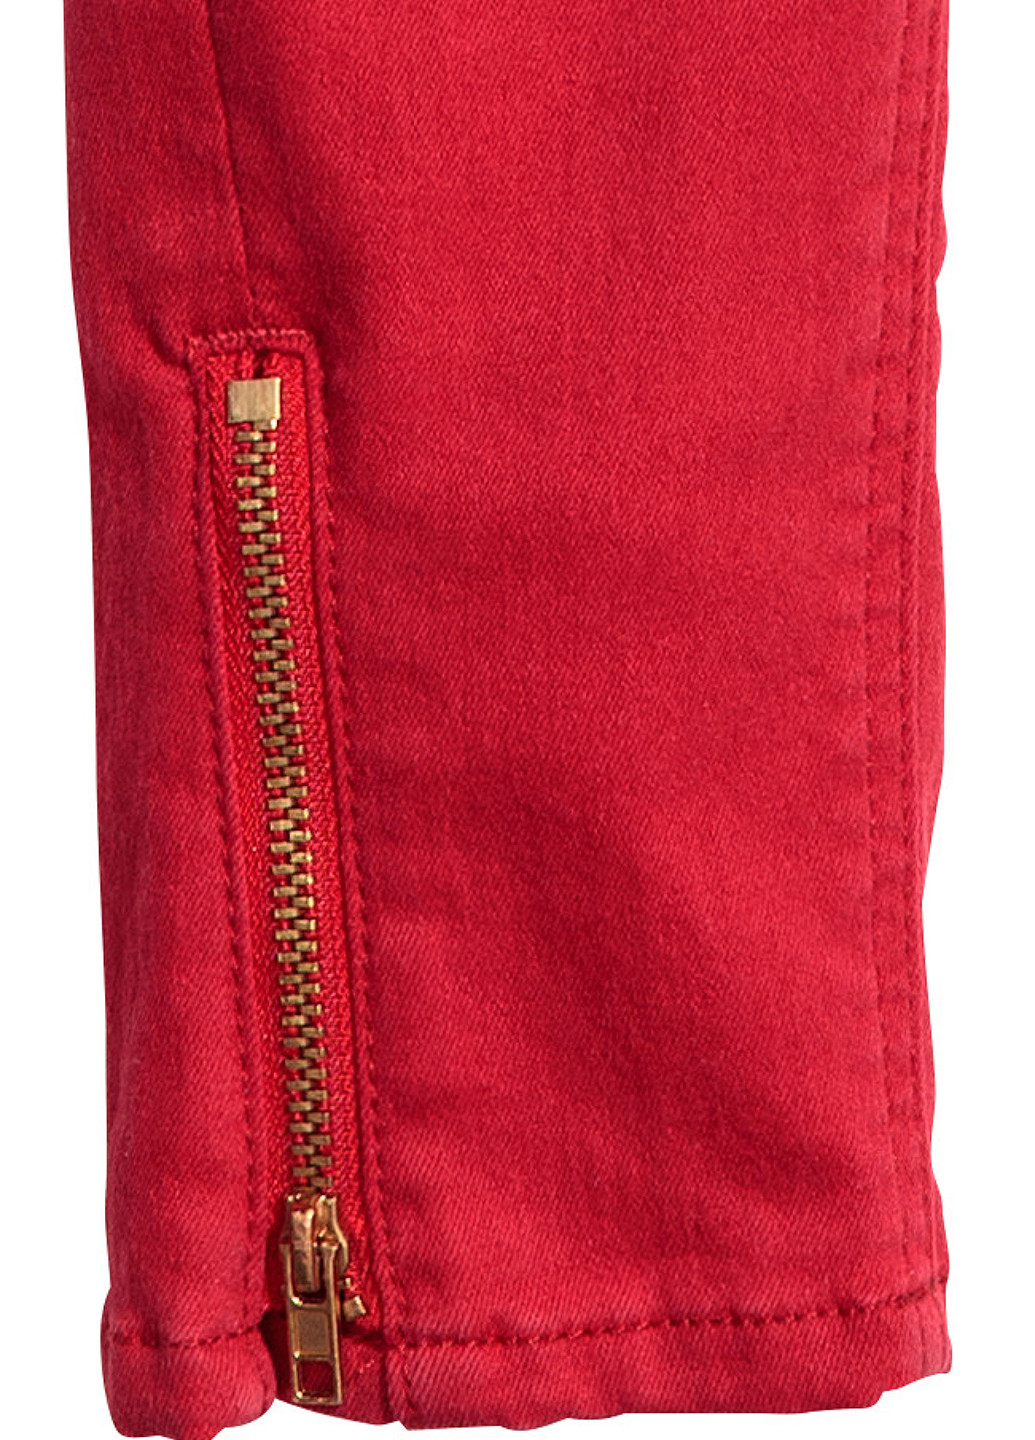 Красные демисезонные зауженные джинсы H&M